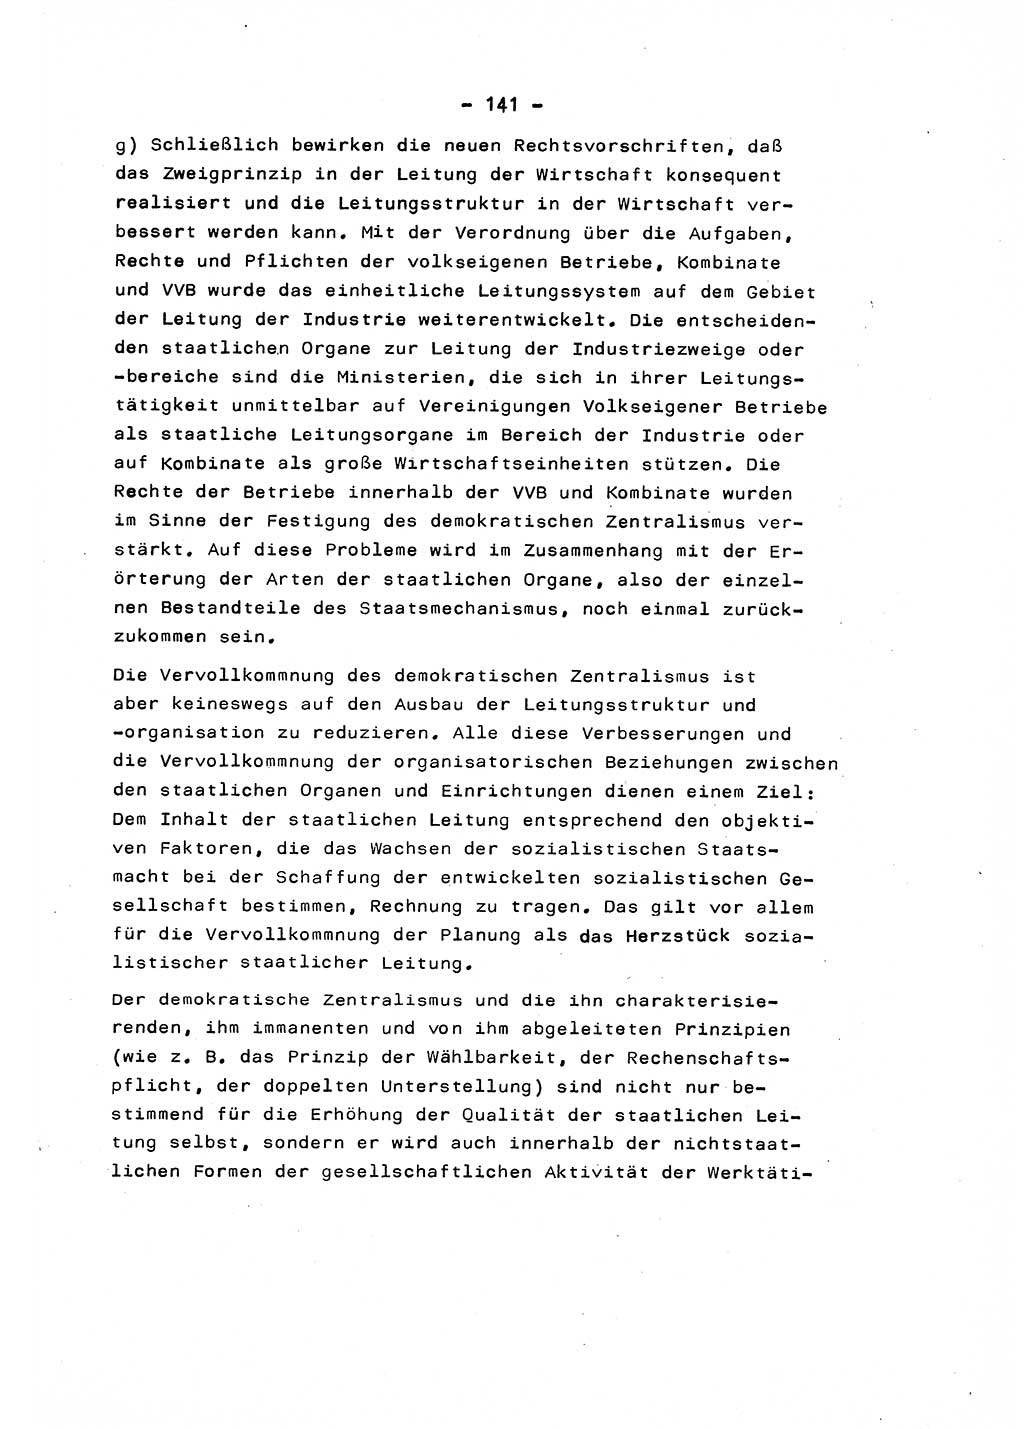 Marxistisch-leninistische Staats- und Rechtstheorie [Deutsche Demokratische Republik (DDR)] 1975, Seite 141 (ML St.-R.-Th. DDR 1975, S. 141)